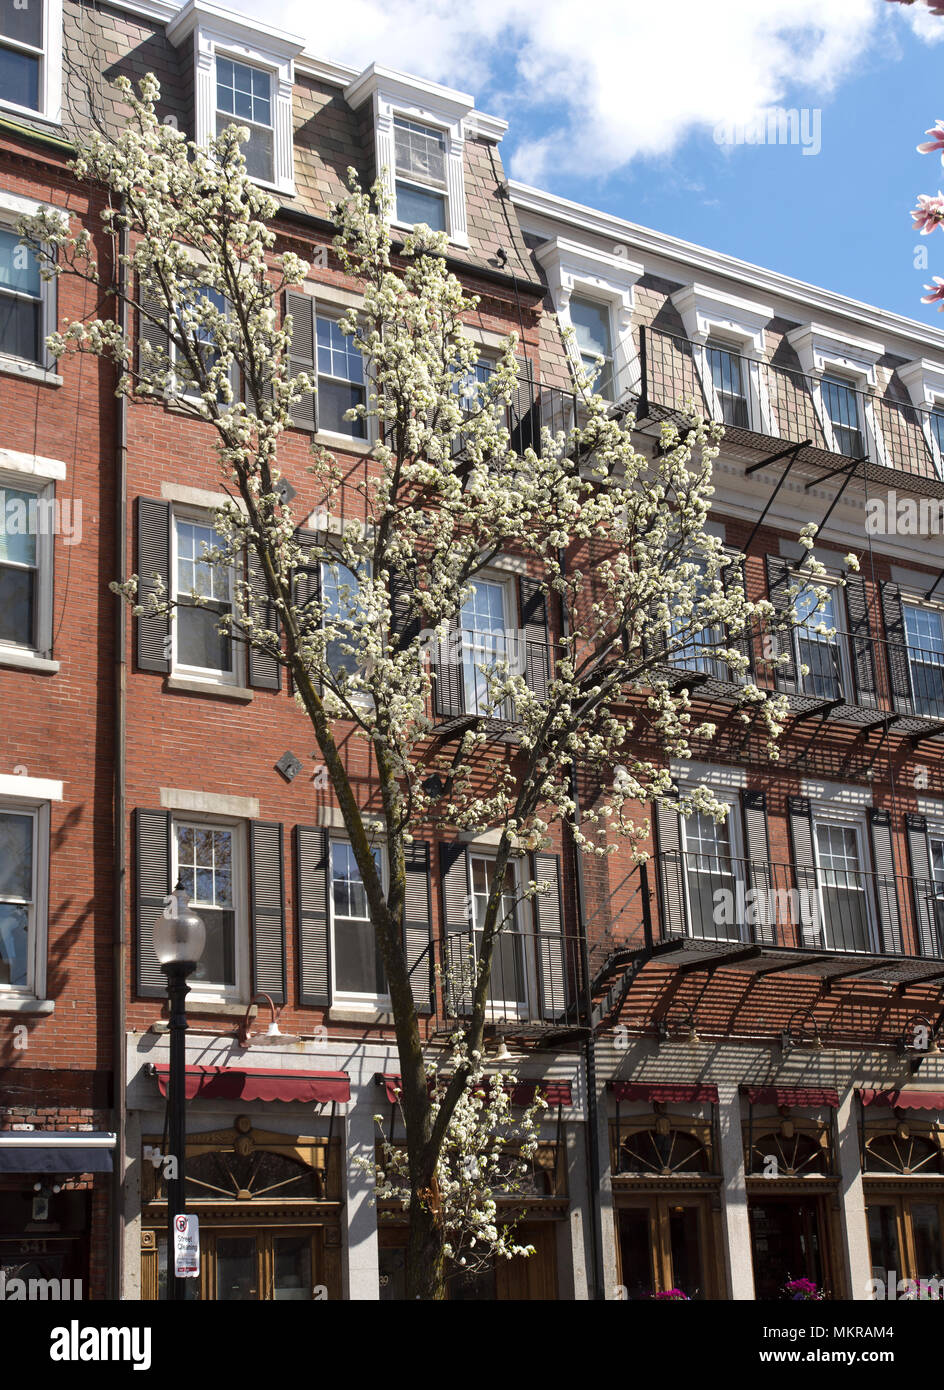 Inizio della primavera fiorisce contro architettura storica nel North End di Boston, Massachusetts, STATI UNITI D'AMERICA Foto Stock